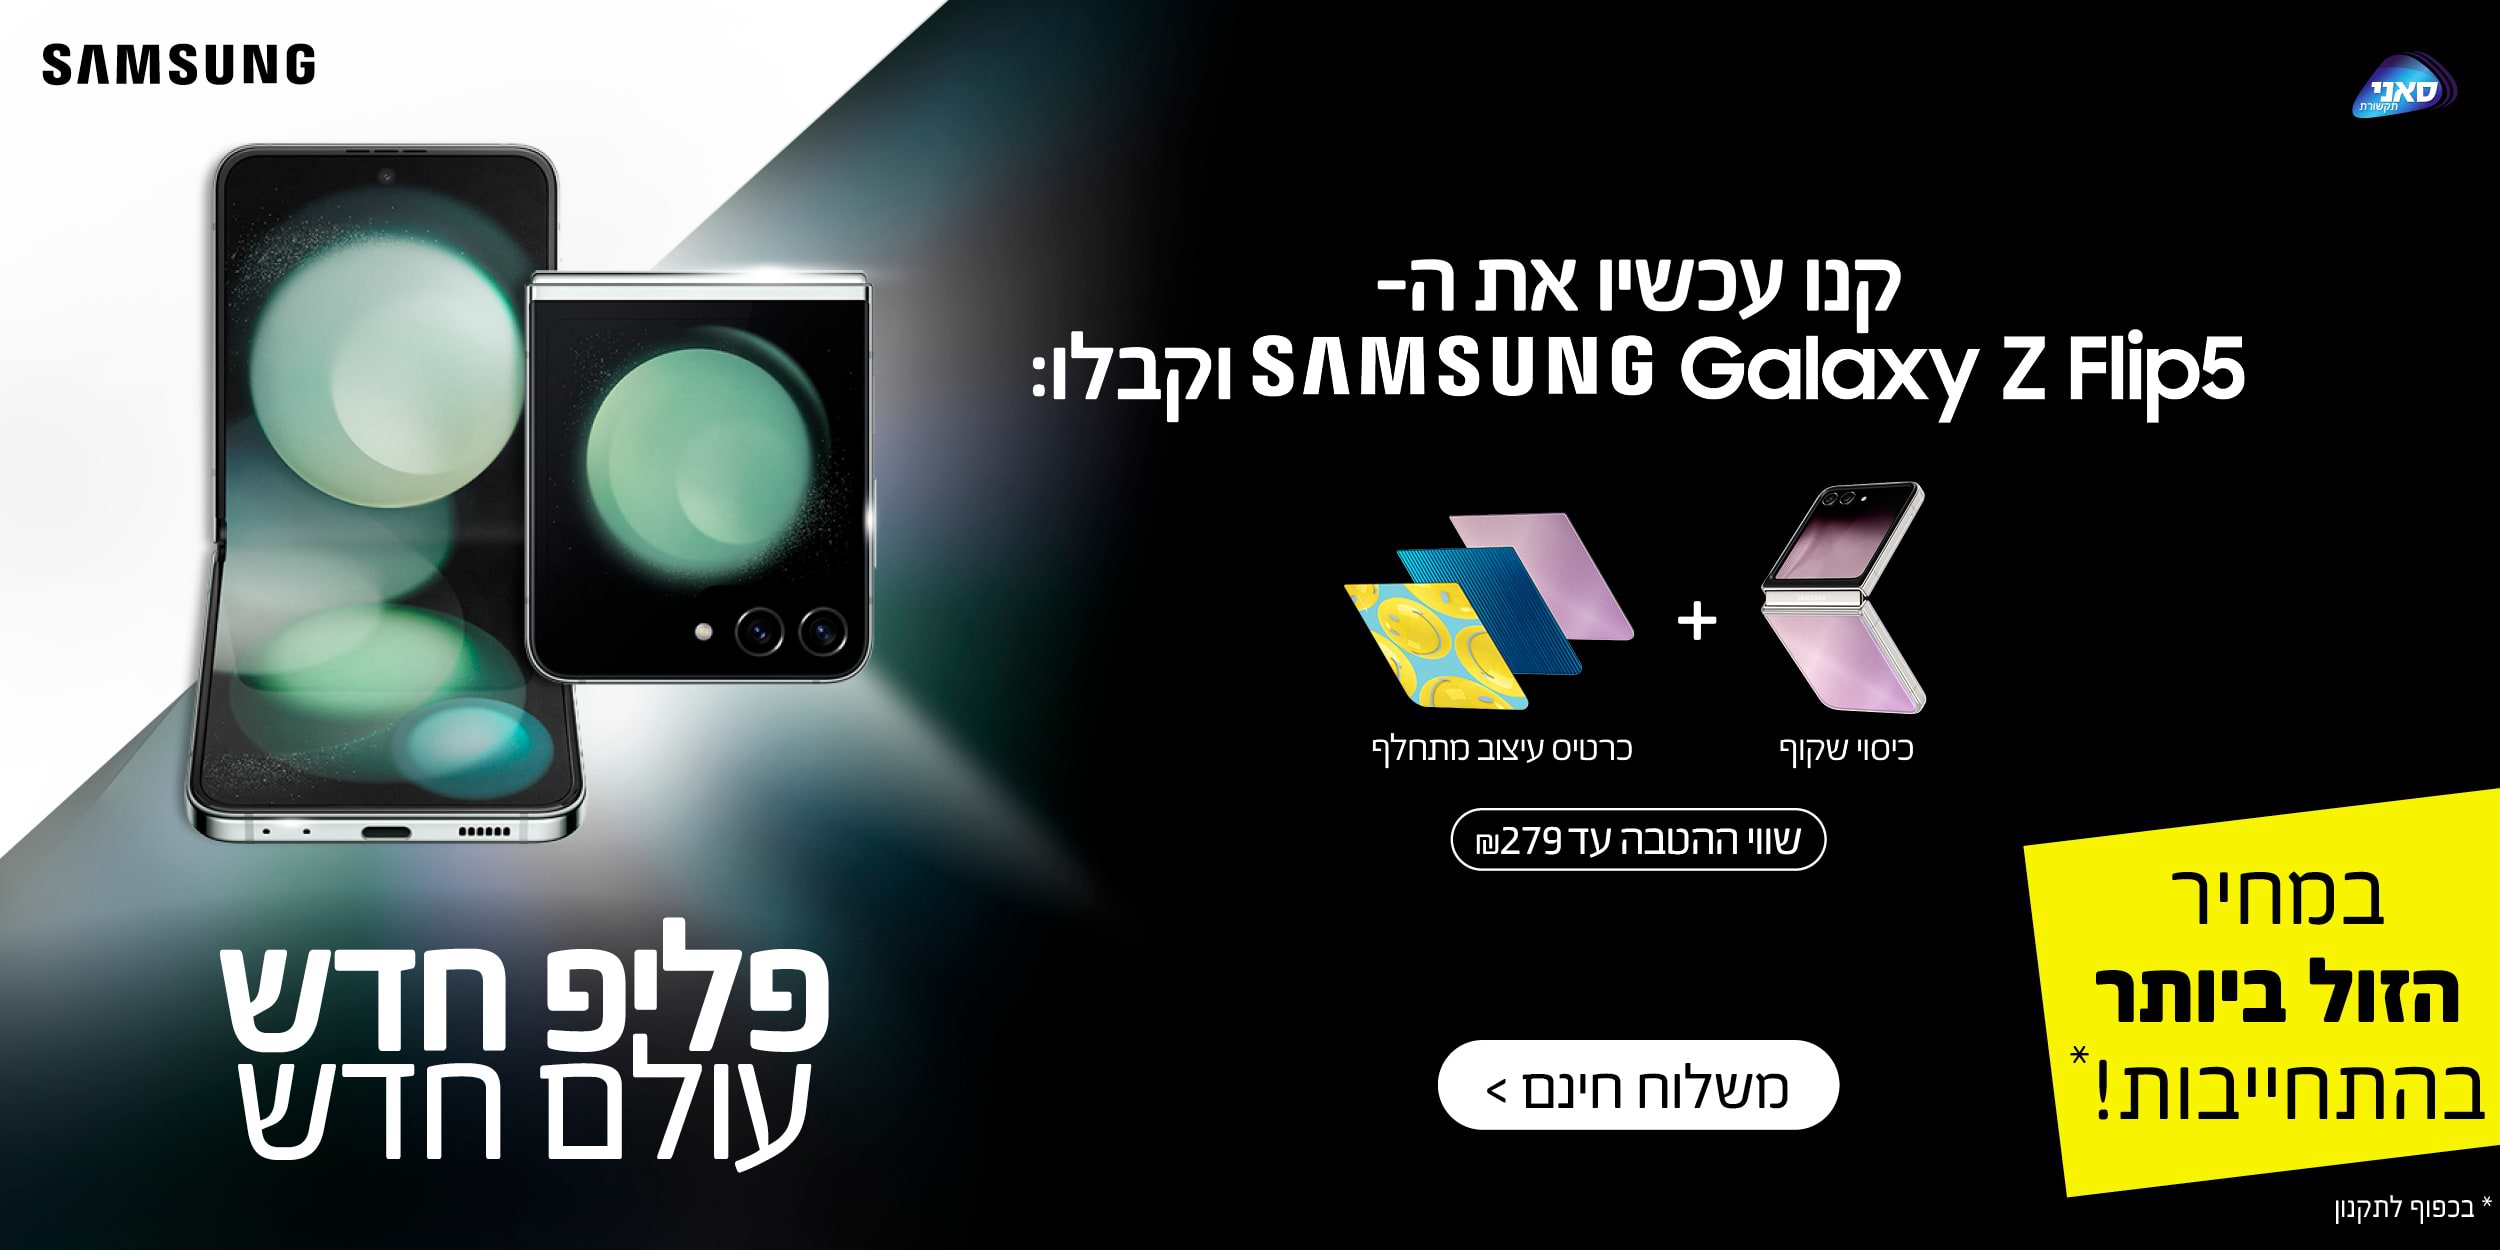 קנו עכשיו את ה- Samsung Galaxy Z Flip5 וקבלו: כיסוי שקוף + כרטיס עיצוב מתחלף במתנה! שווי ההטבה עד 279 ש